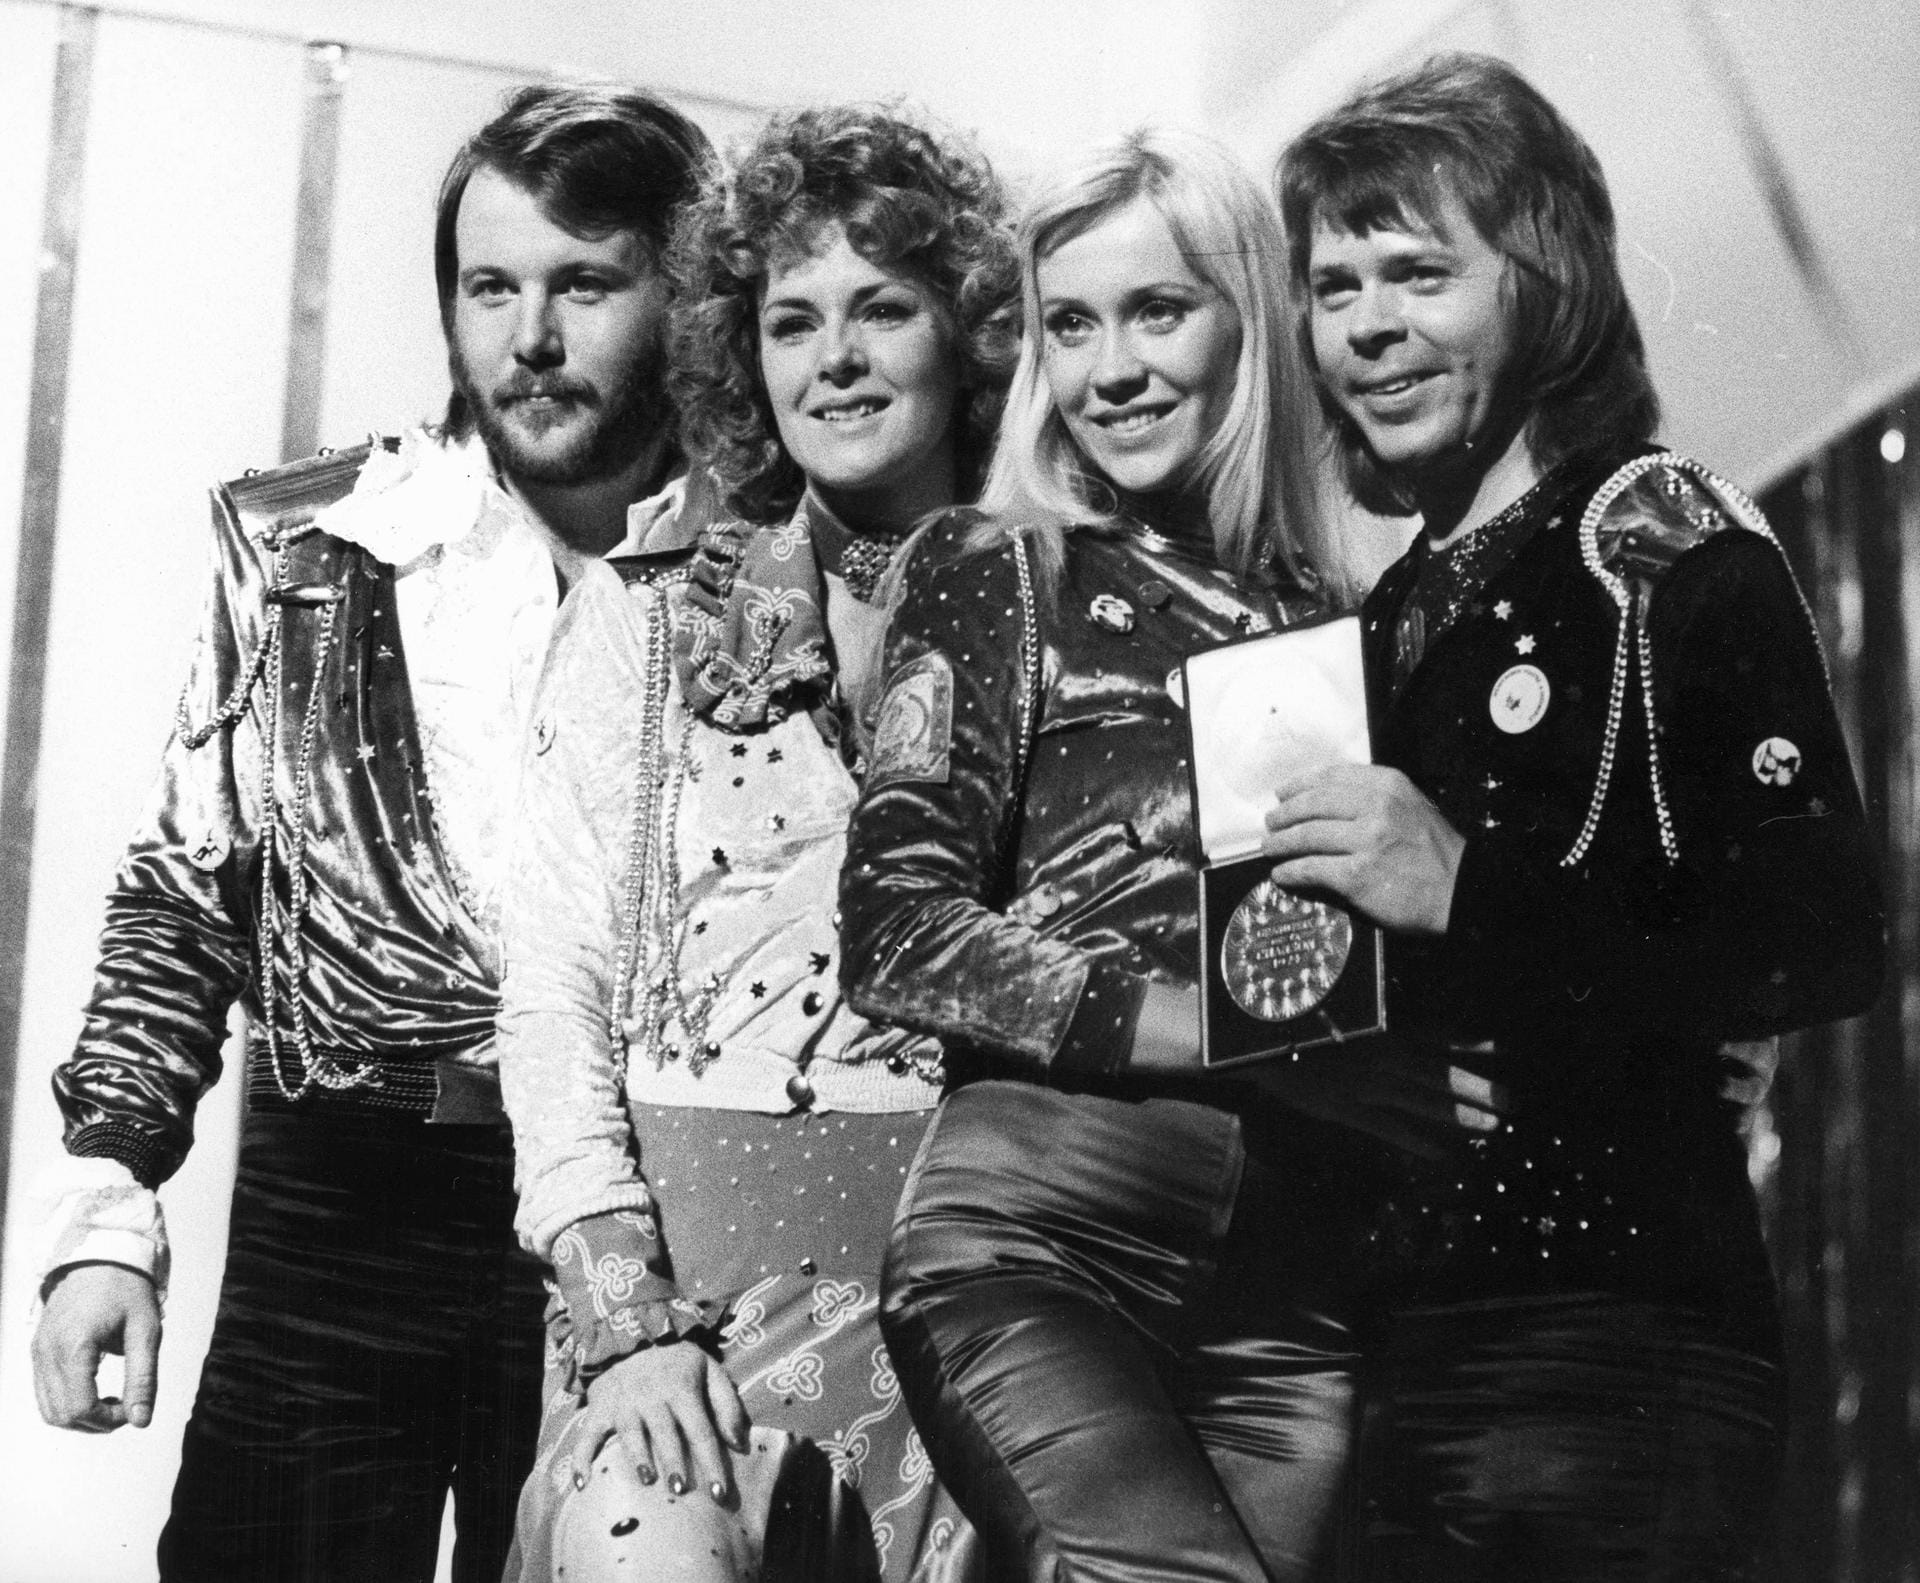 Schwedens Exportschlager ABBA gewann 1974 mit "Waterloo".